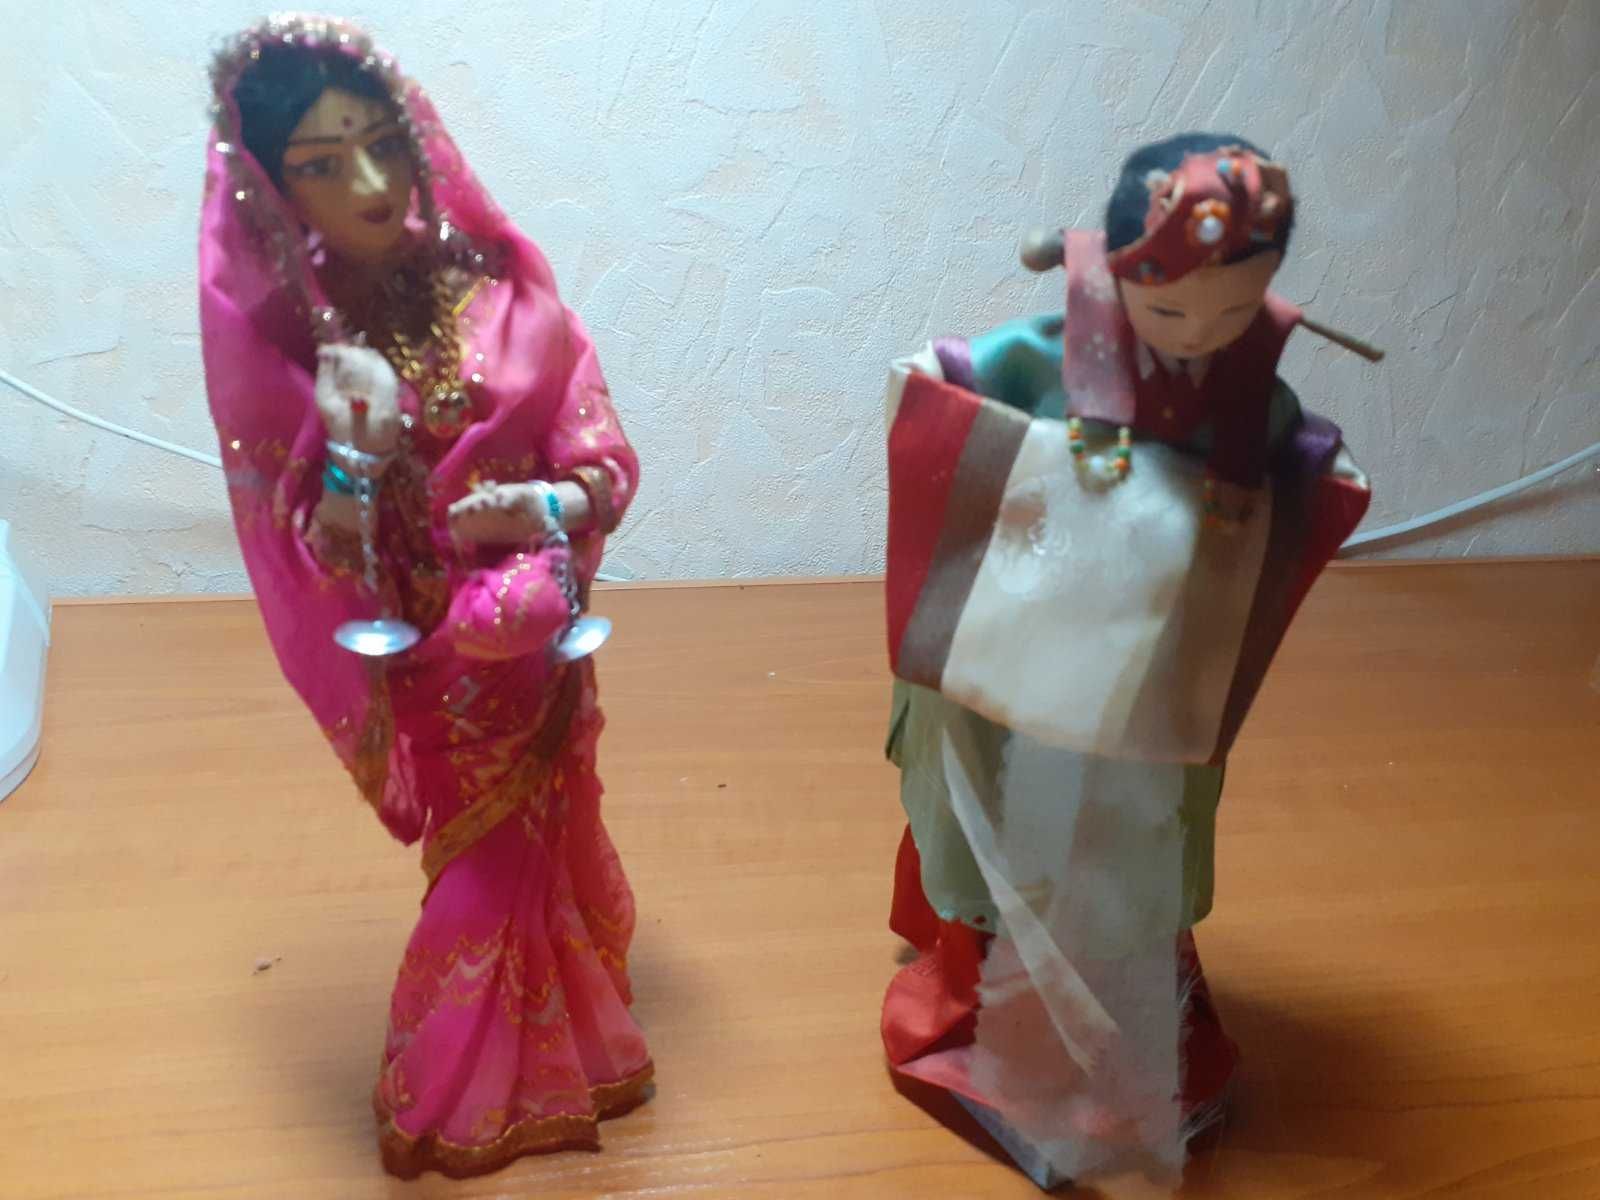 Винтажные куклы .в национальной одежде Индии и Японии. Винтаж 60-70 г